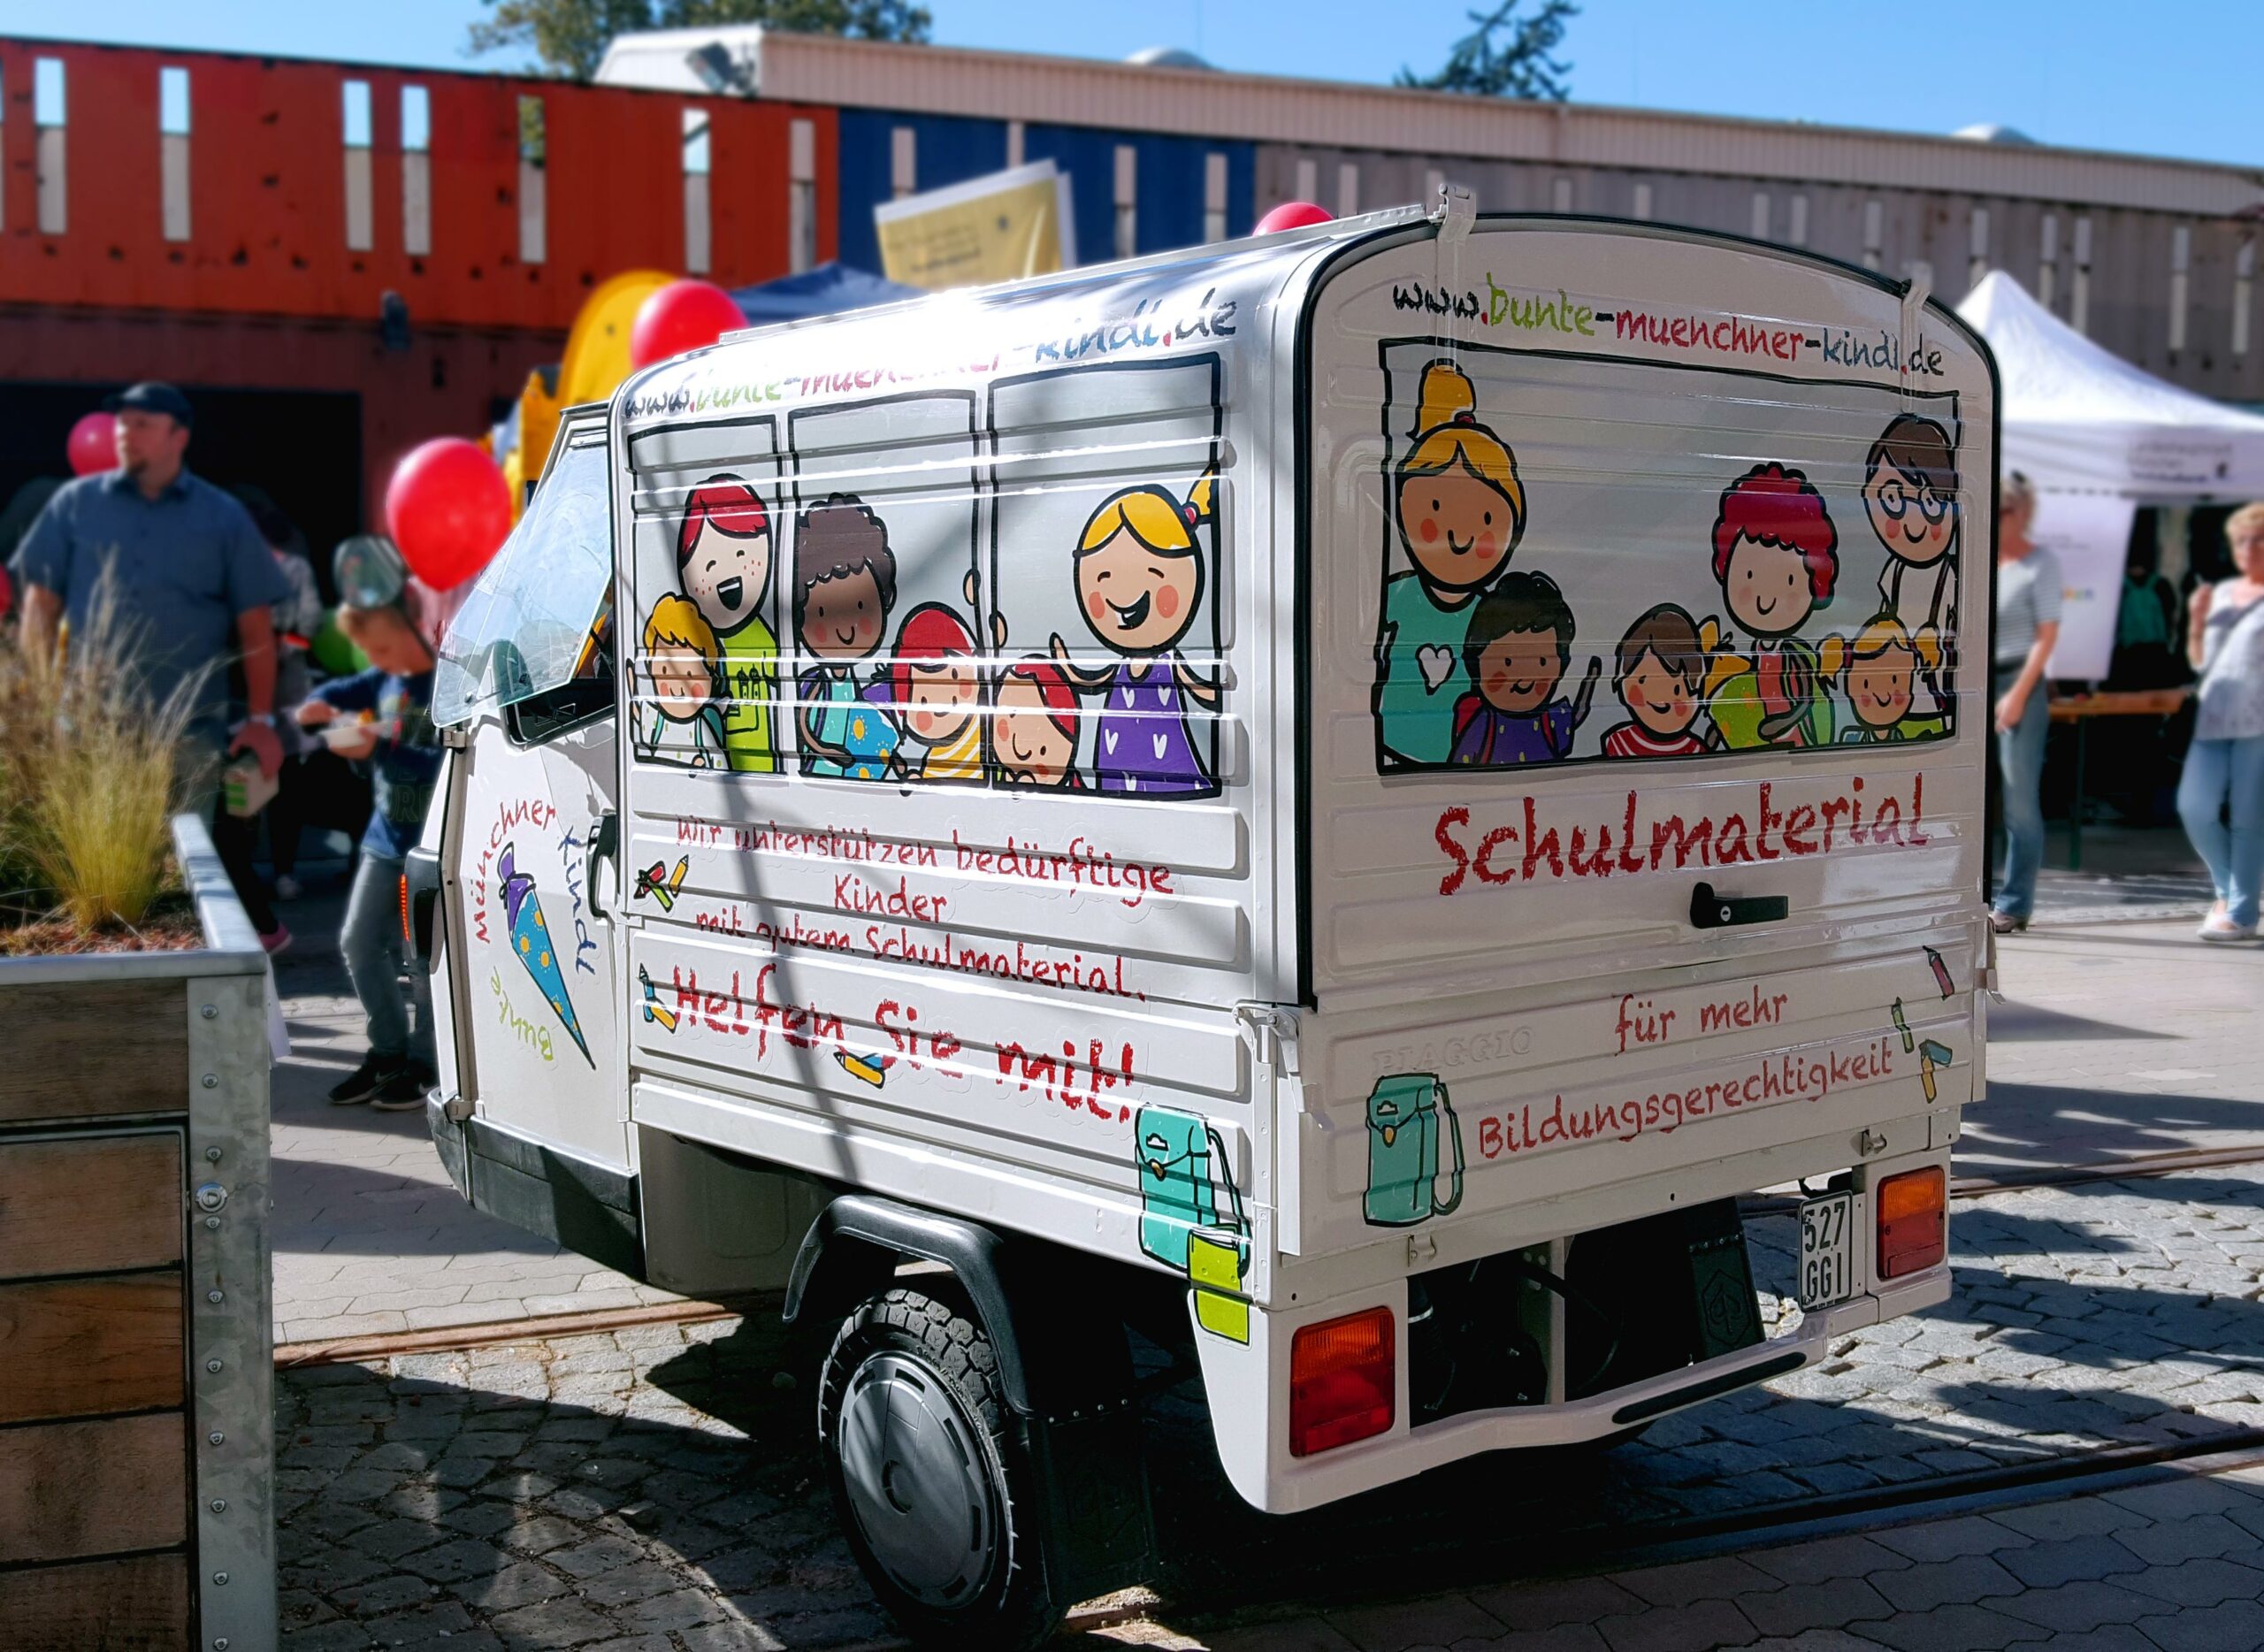 Foto eines mit Illustrationen beklebten Fahrzeugs als Werbemittel für Bunte Münchner Kindl in München. Die bunten Illustrationen geben dem Fahrzeug den Look eines mit Kindern besetzten Schulbusses.